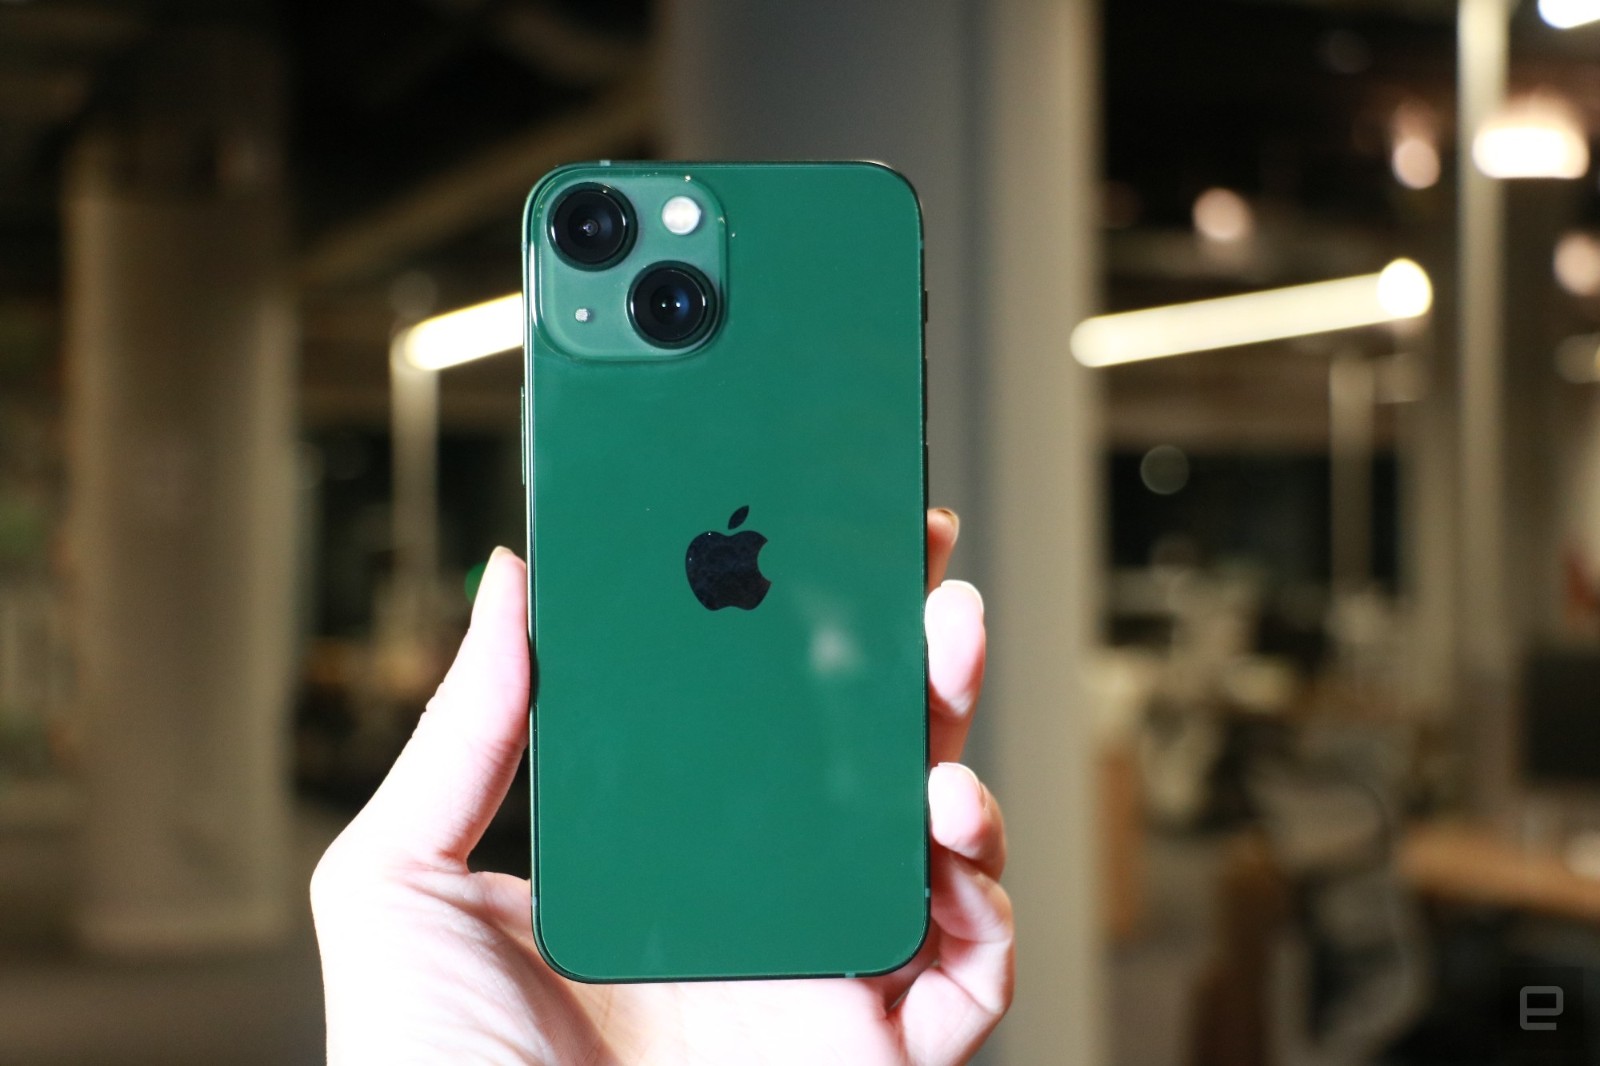 跟去年紫色iphone 12不同的是,今年苹果推出的苍岭绿iphone 13 pro和